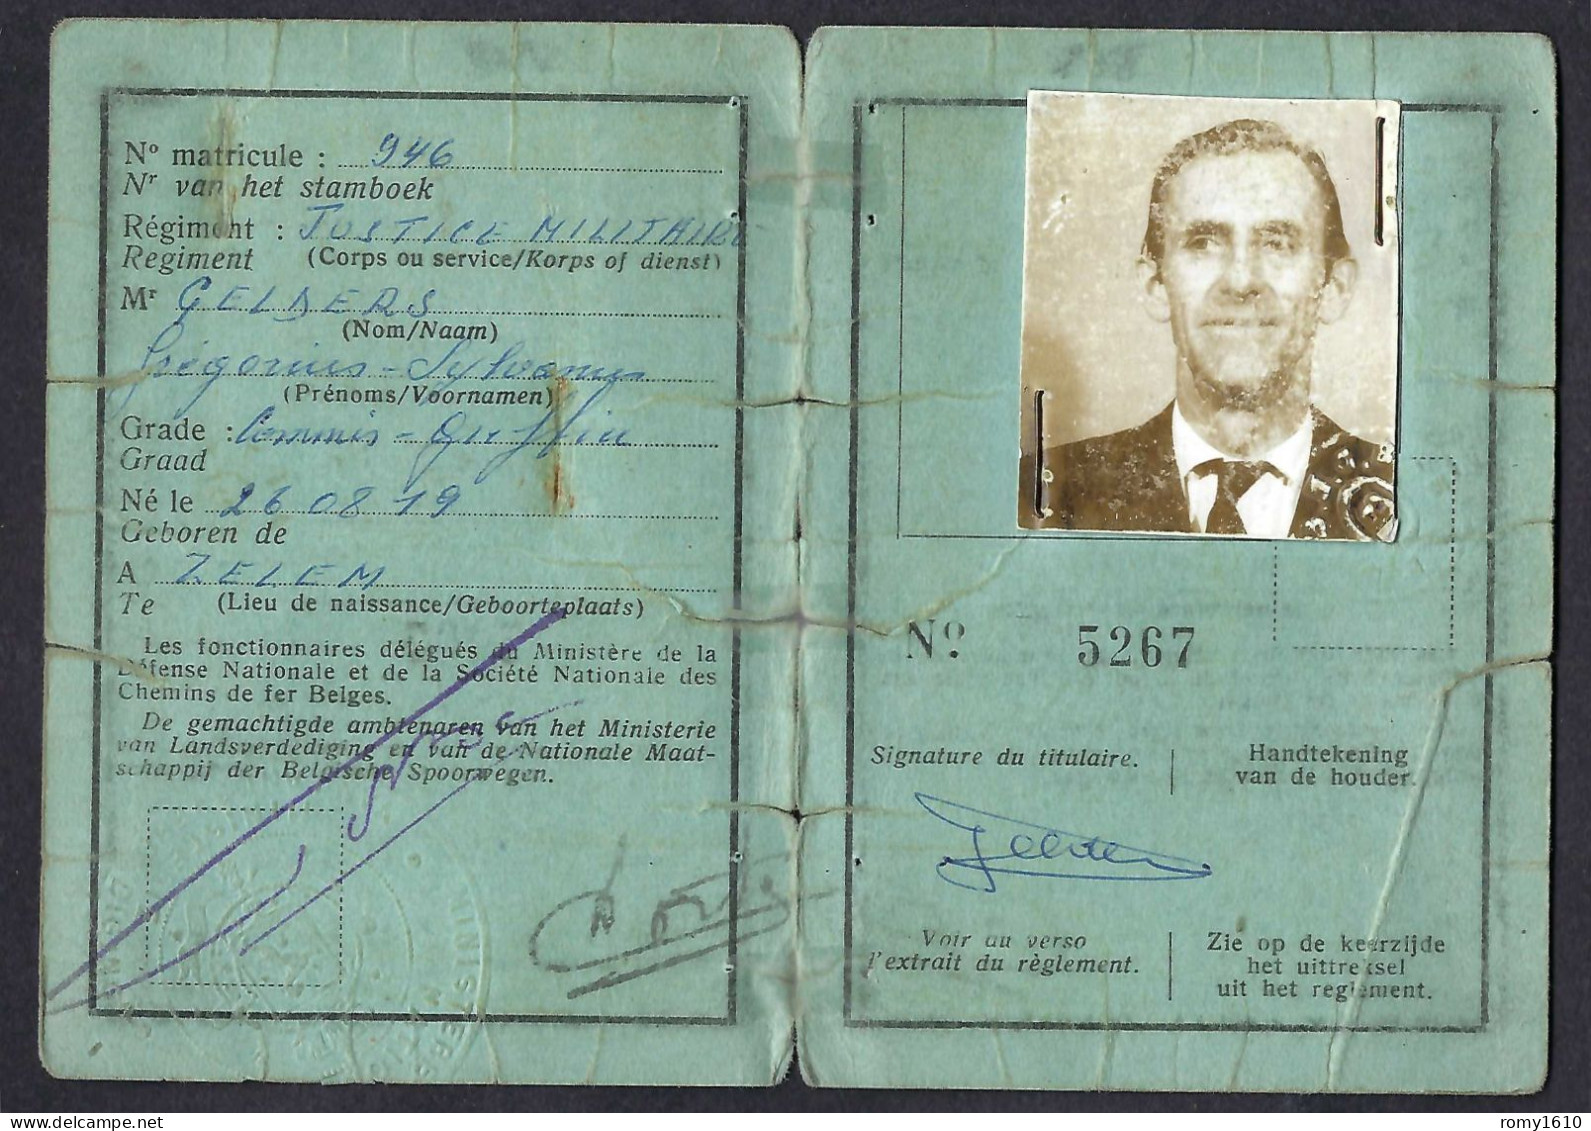 Carte D'Identité Officier De L'Active, Donnant Droit Au Transport à Prix Réduit, Chemin De Fer, Vicinaux  Belges.1959-69 - Autres & Non Classés